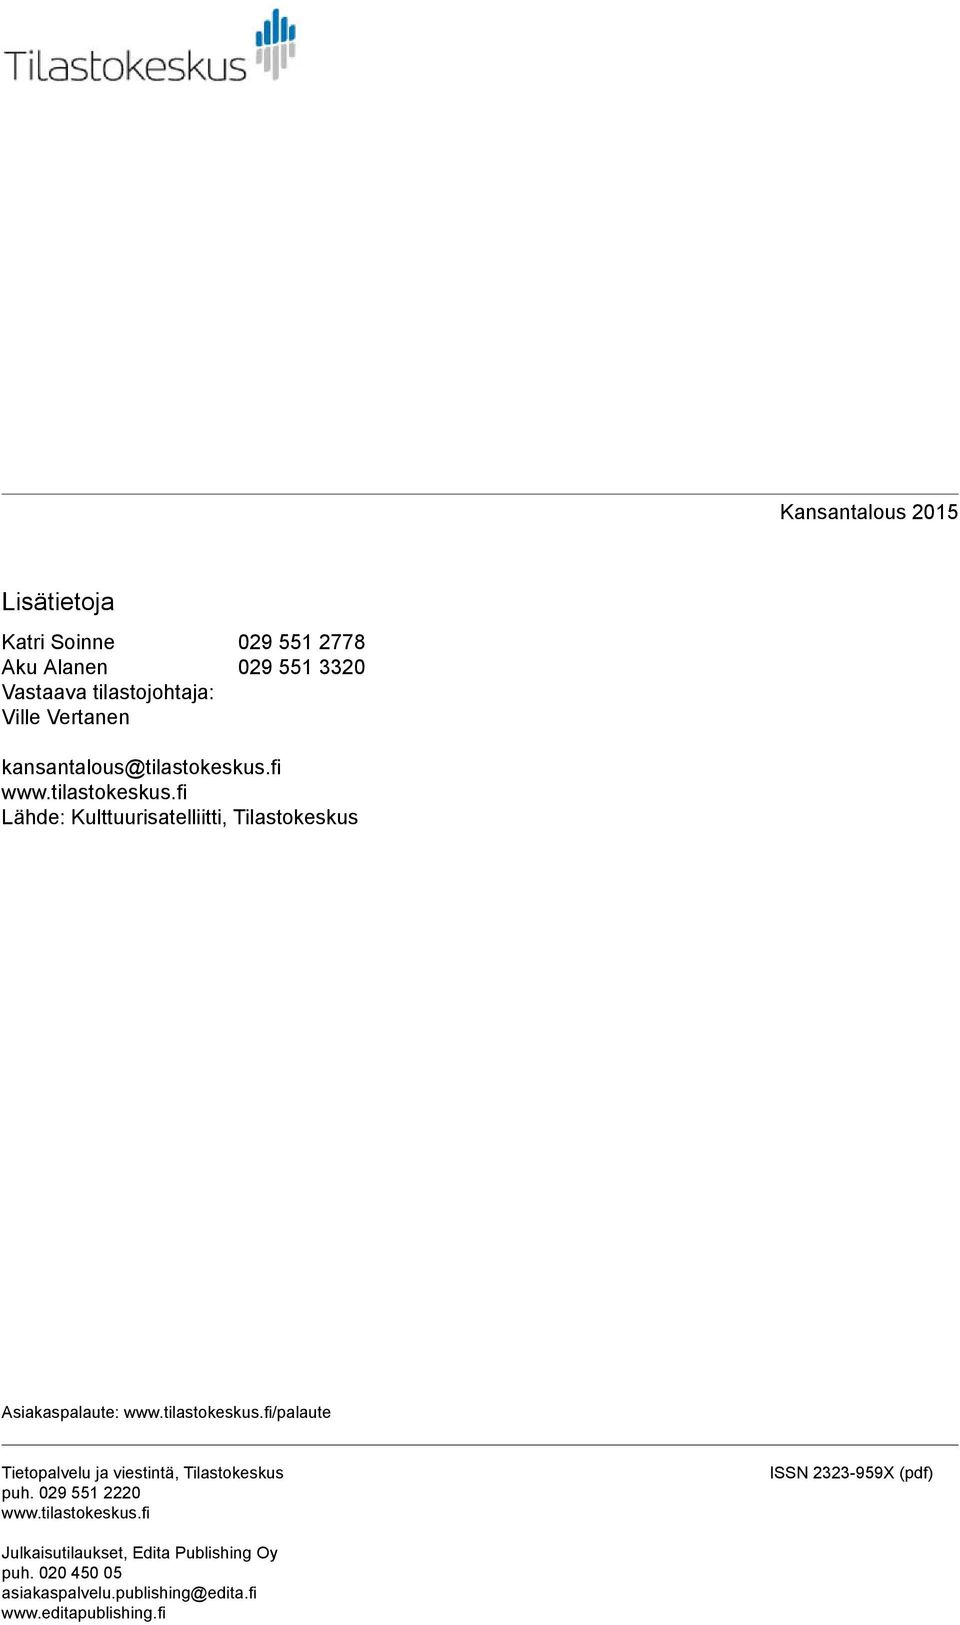 tilastokeskus.fi/palaute Tietopalvelu ja viestintä, Tilastokeskus puh. 029 551 2220 www.tilastokeskus.fi ISSN 2323-959X (pdf) Julkaisutilaukset, Edita Publishing Oy puh.